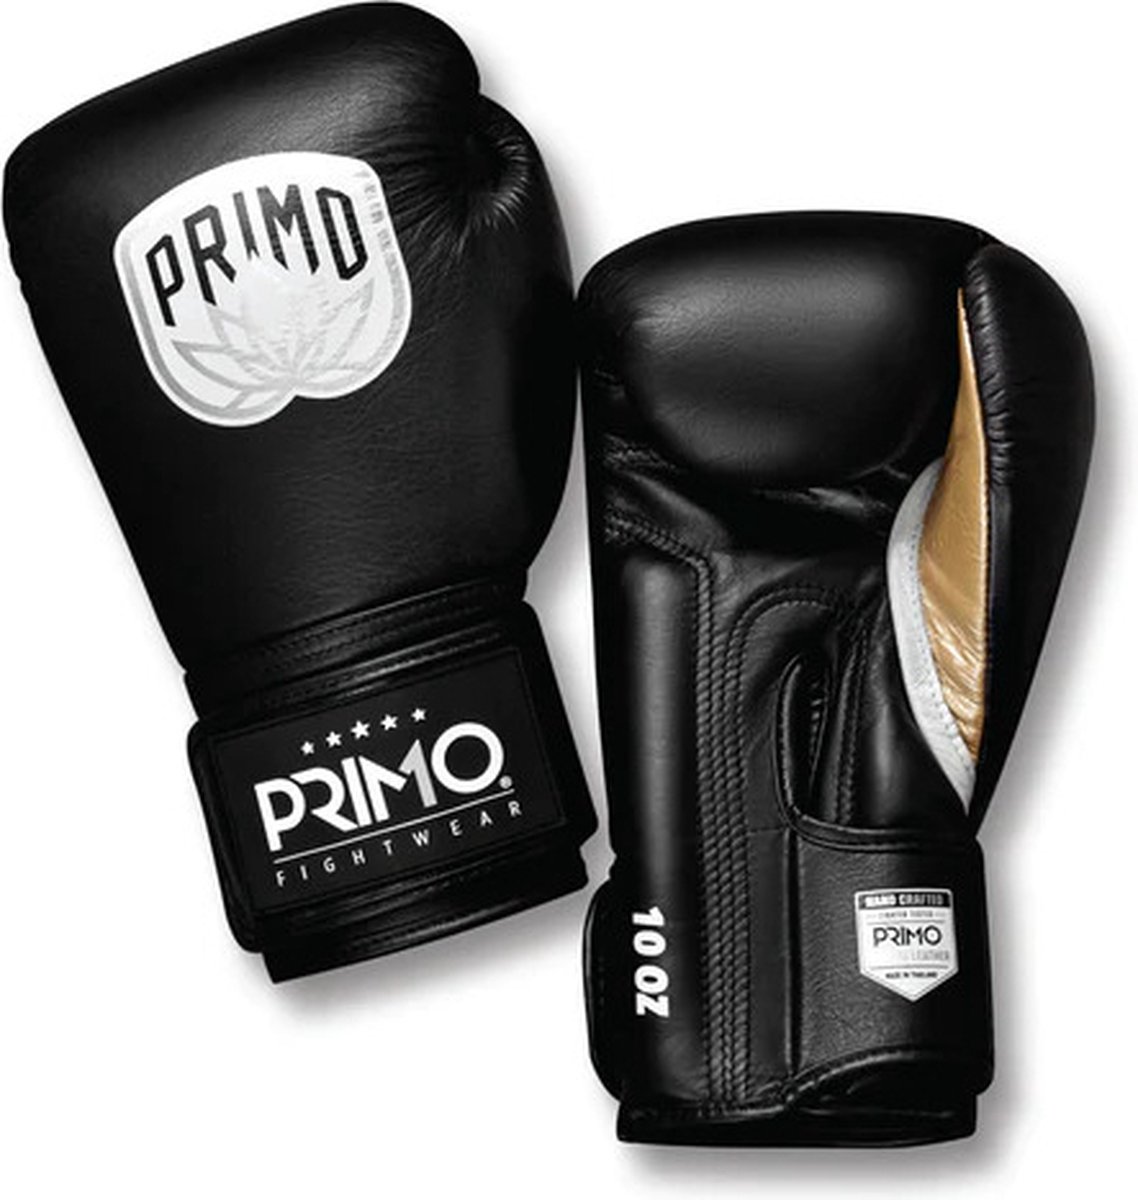 Primo Emblem 2.0 Bokshandschoenen - Leder - Onyx - zwart - 16 oz